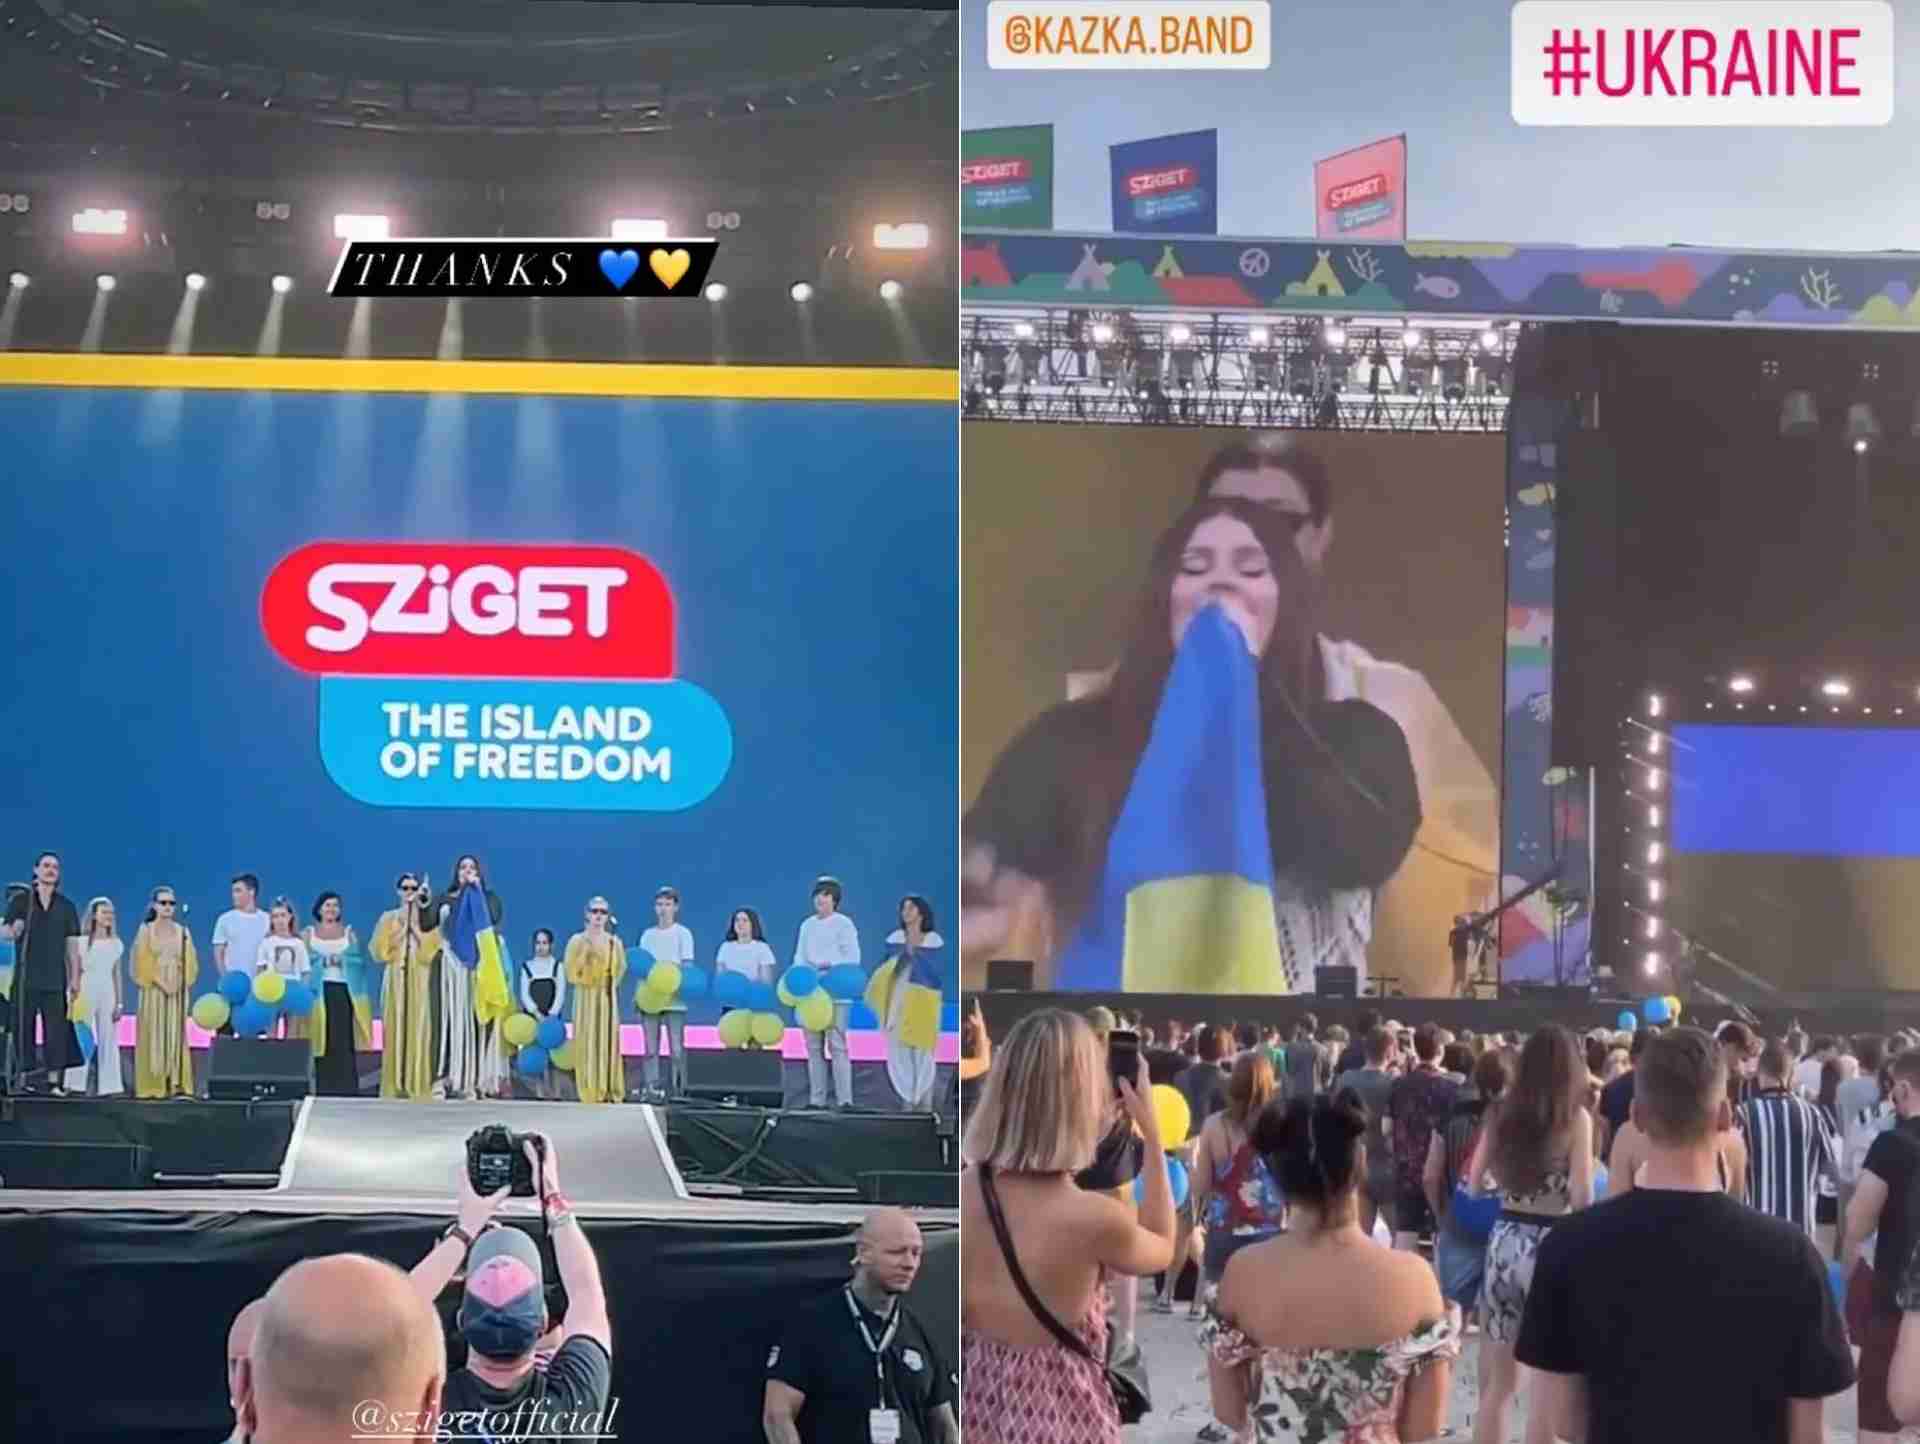 Український гурт виступив на фестивалі, де беруть участь росіяни, з антивоєнним гаслом